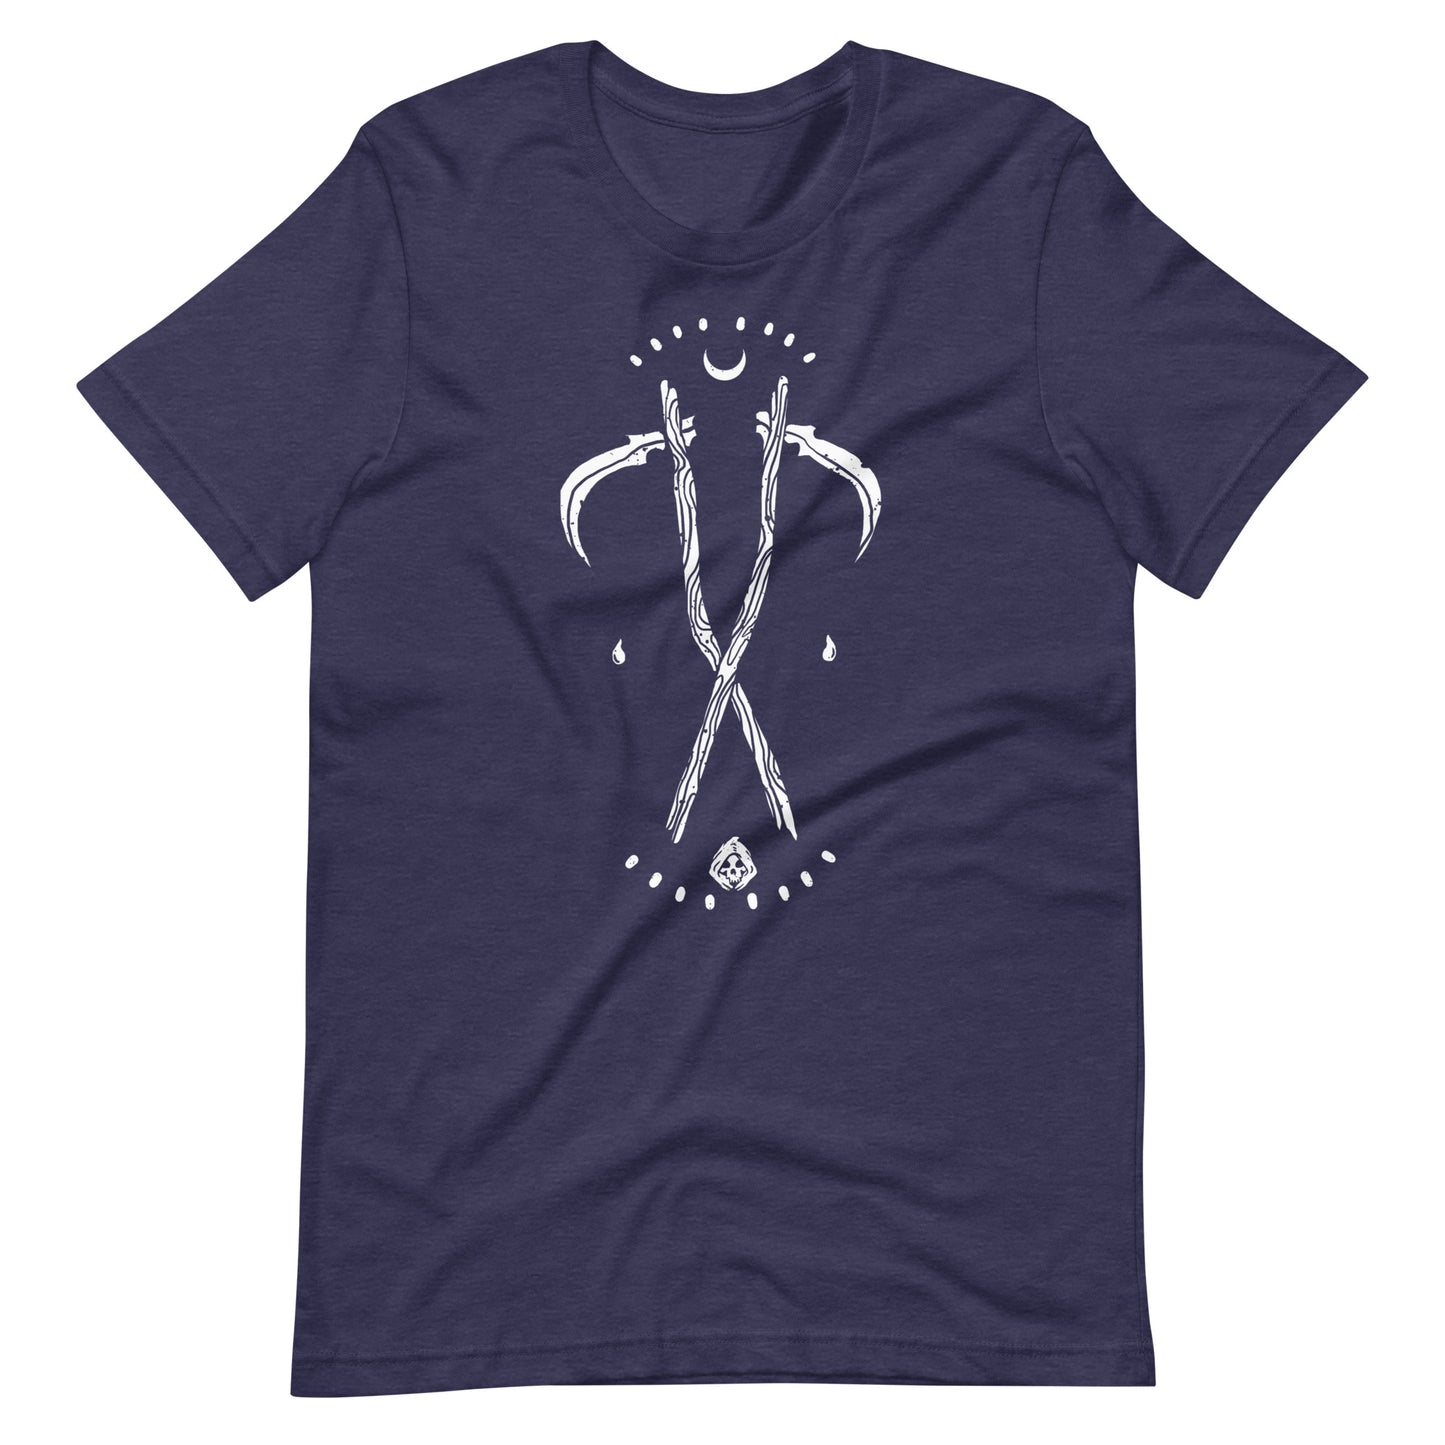 Grim - Men's t-shirt - Heather Midnight Navy Front